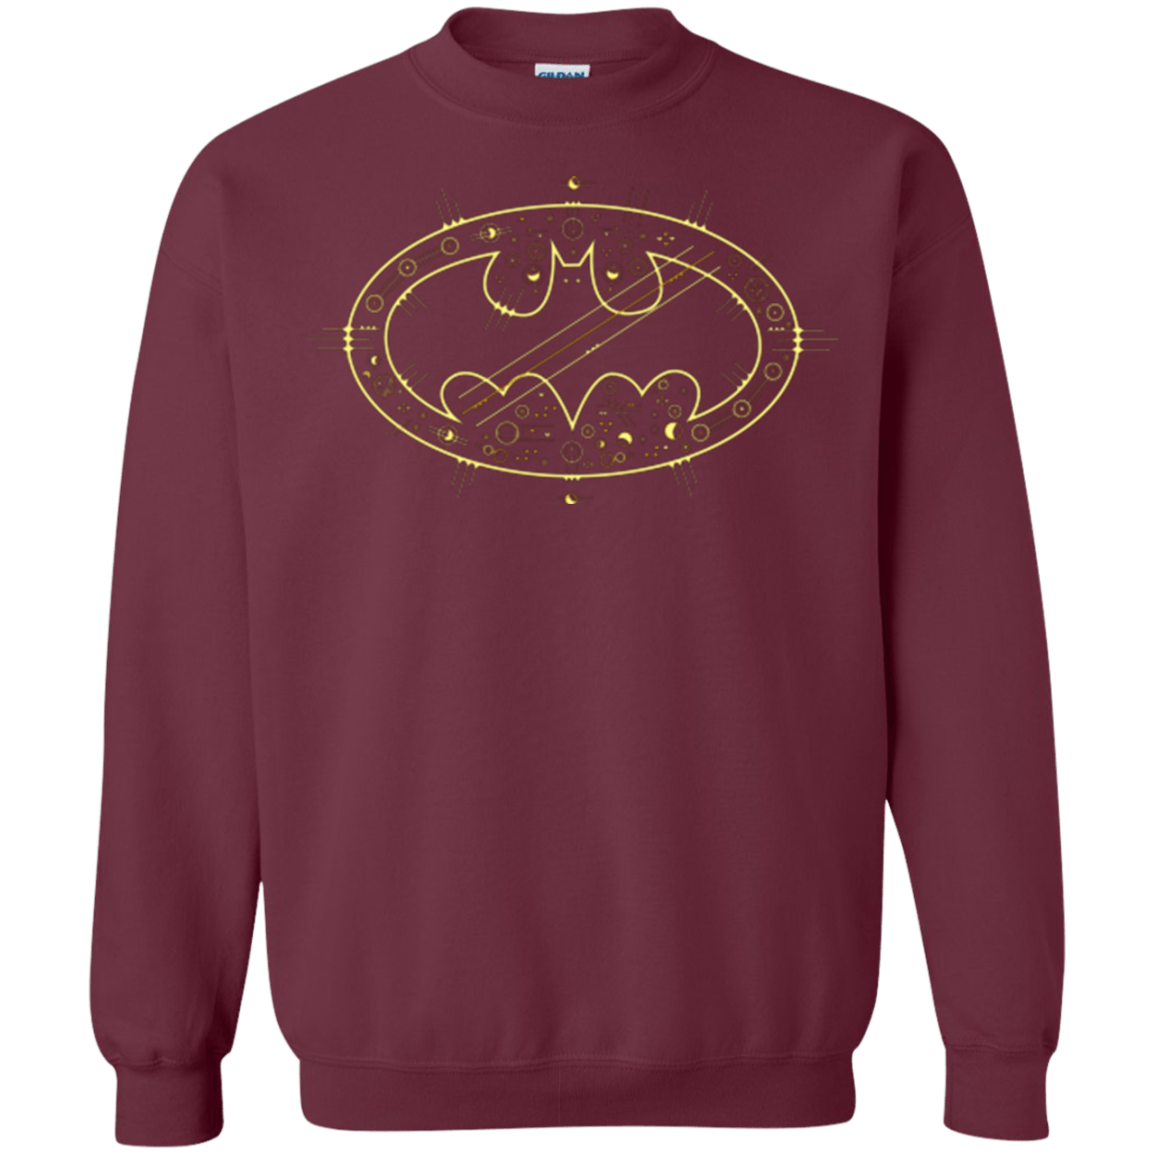 Sweatshirts Maroon / Small Tech bat Crewneck Sweatshirt